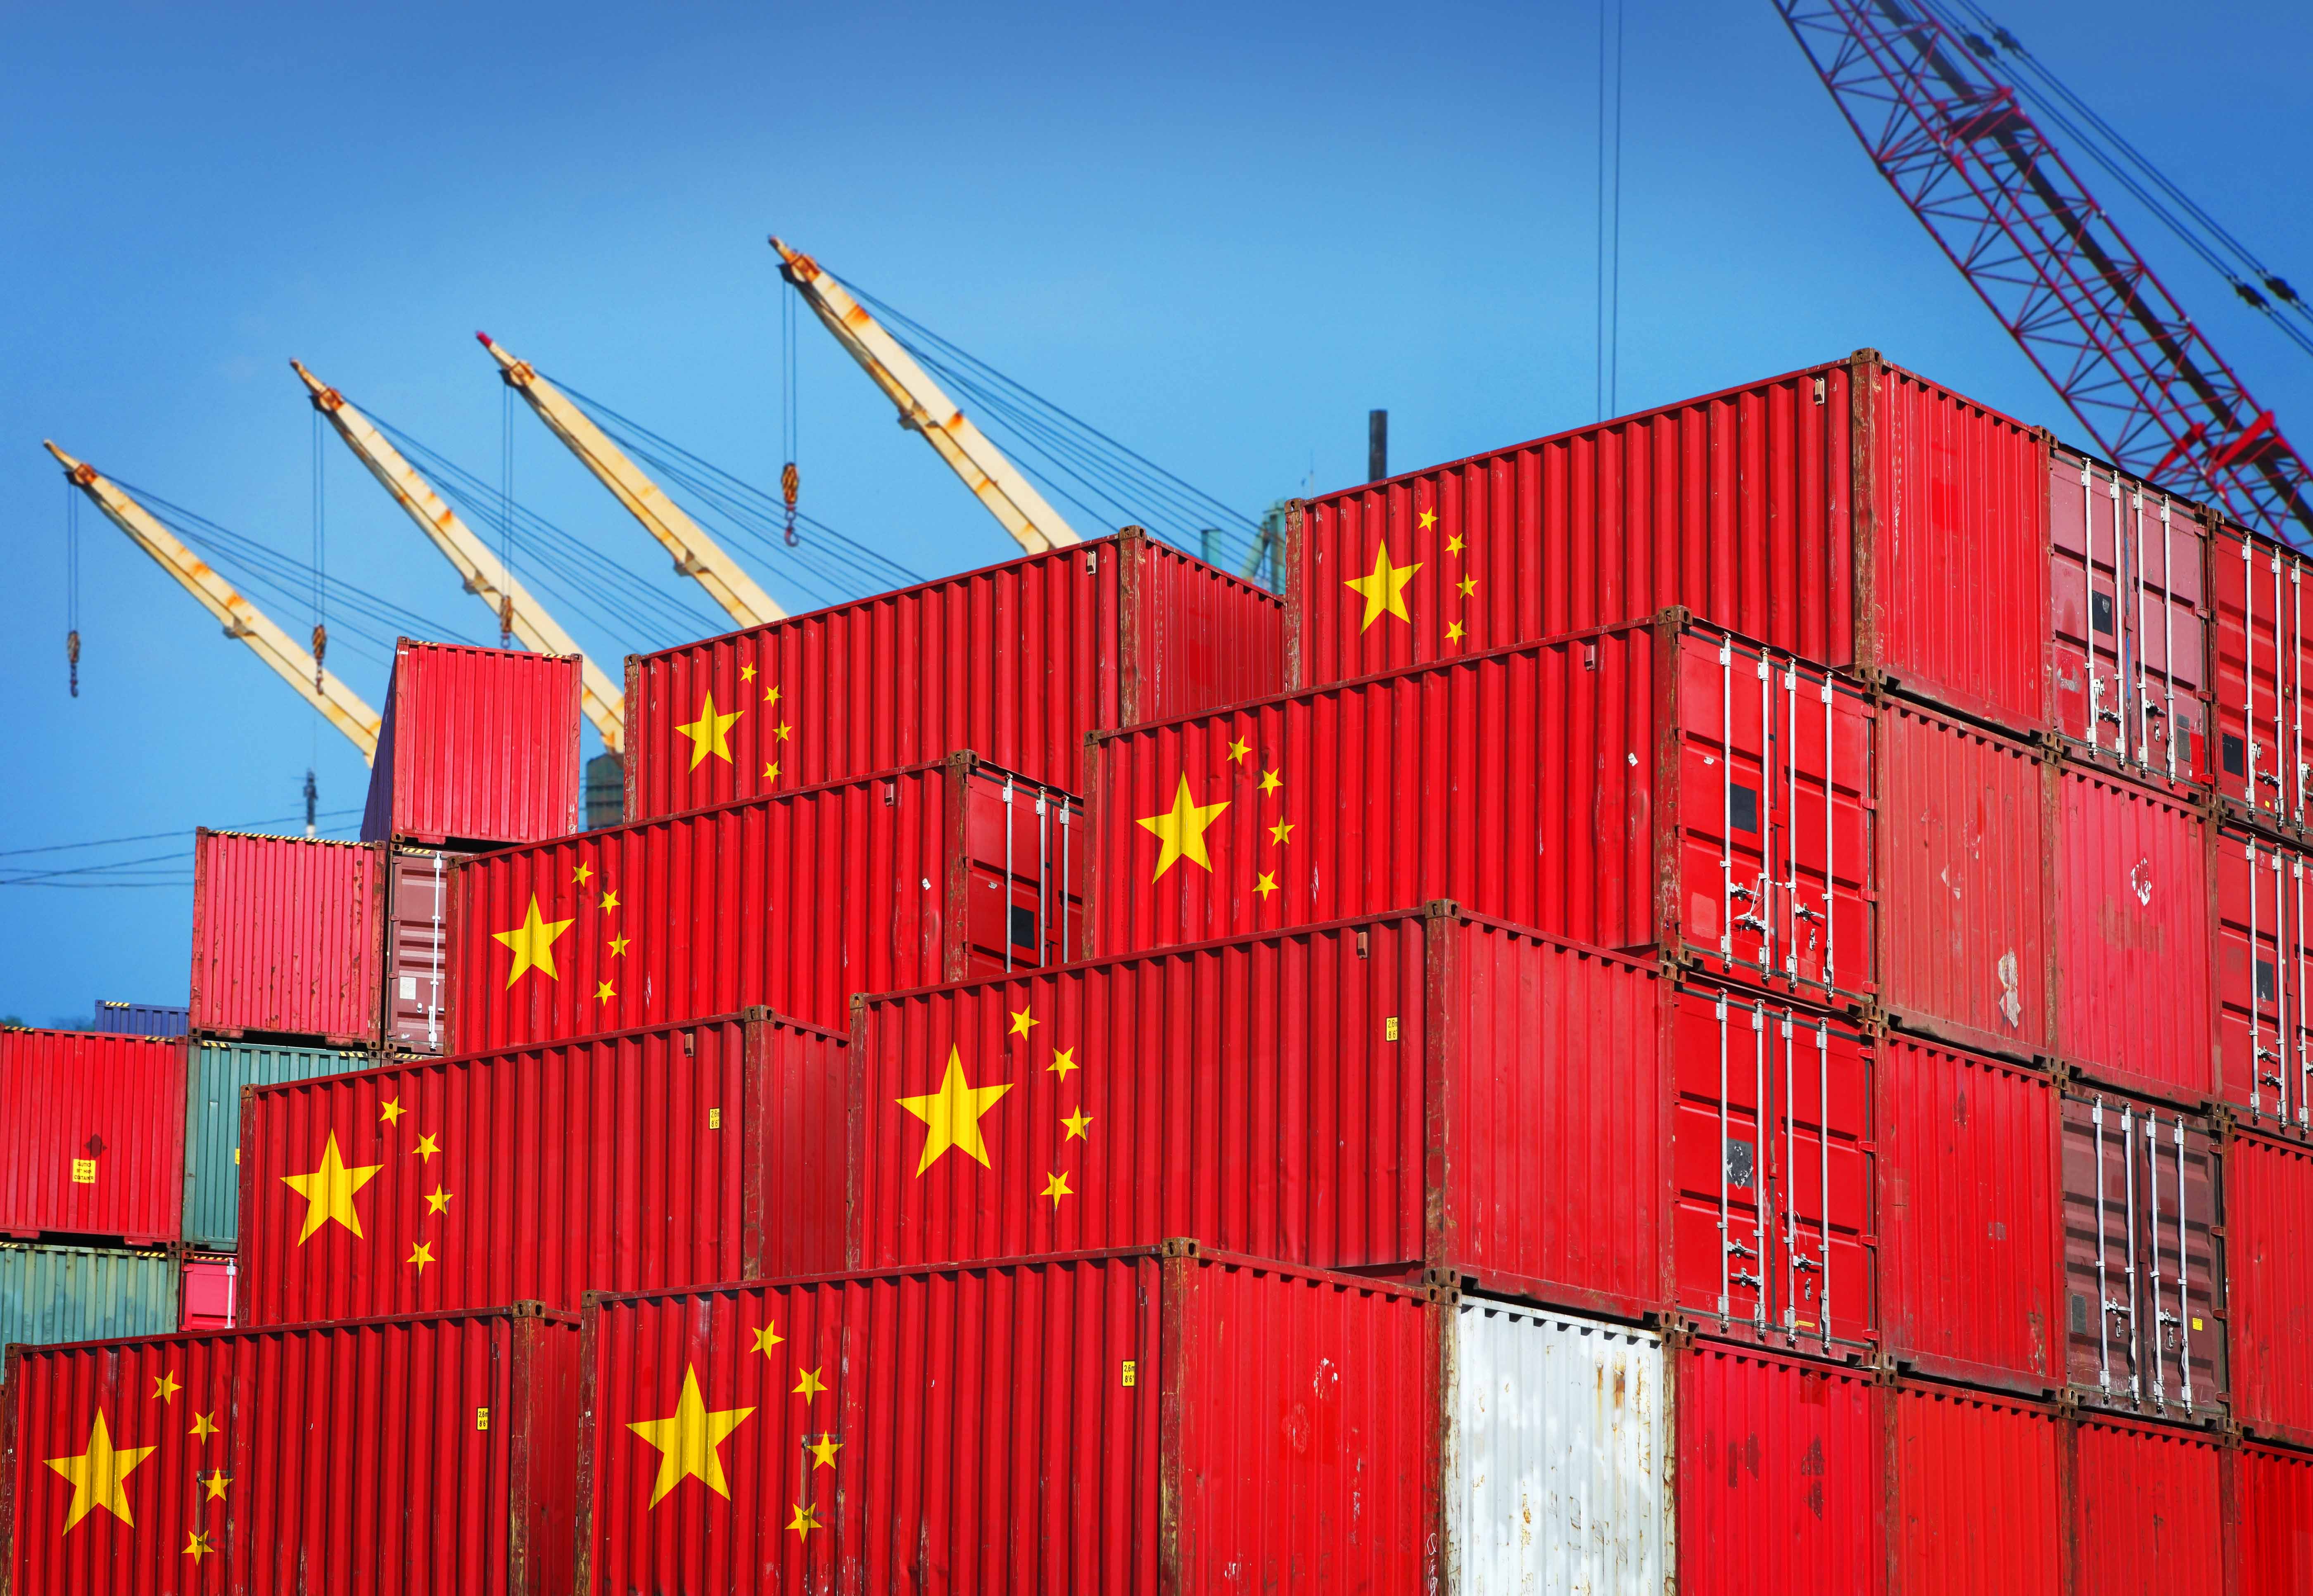 新报告:中国崛起的教训:“中国冲击”挑战了经济学家对贸易一体化对劳动力市场影响的良性观点